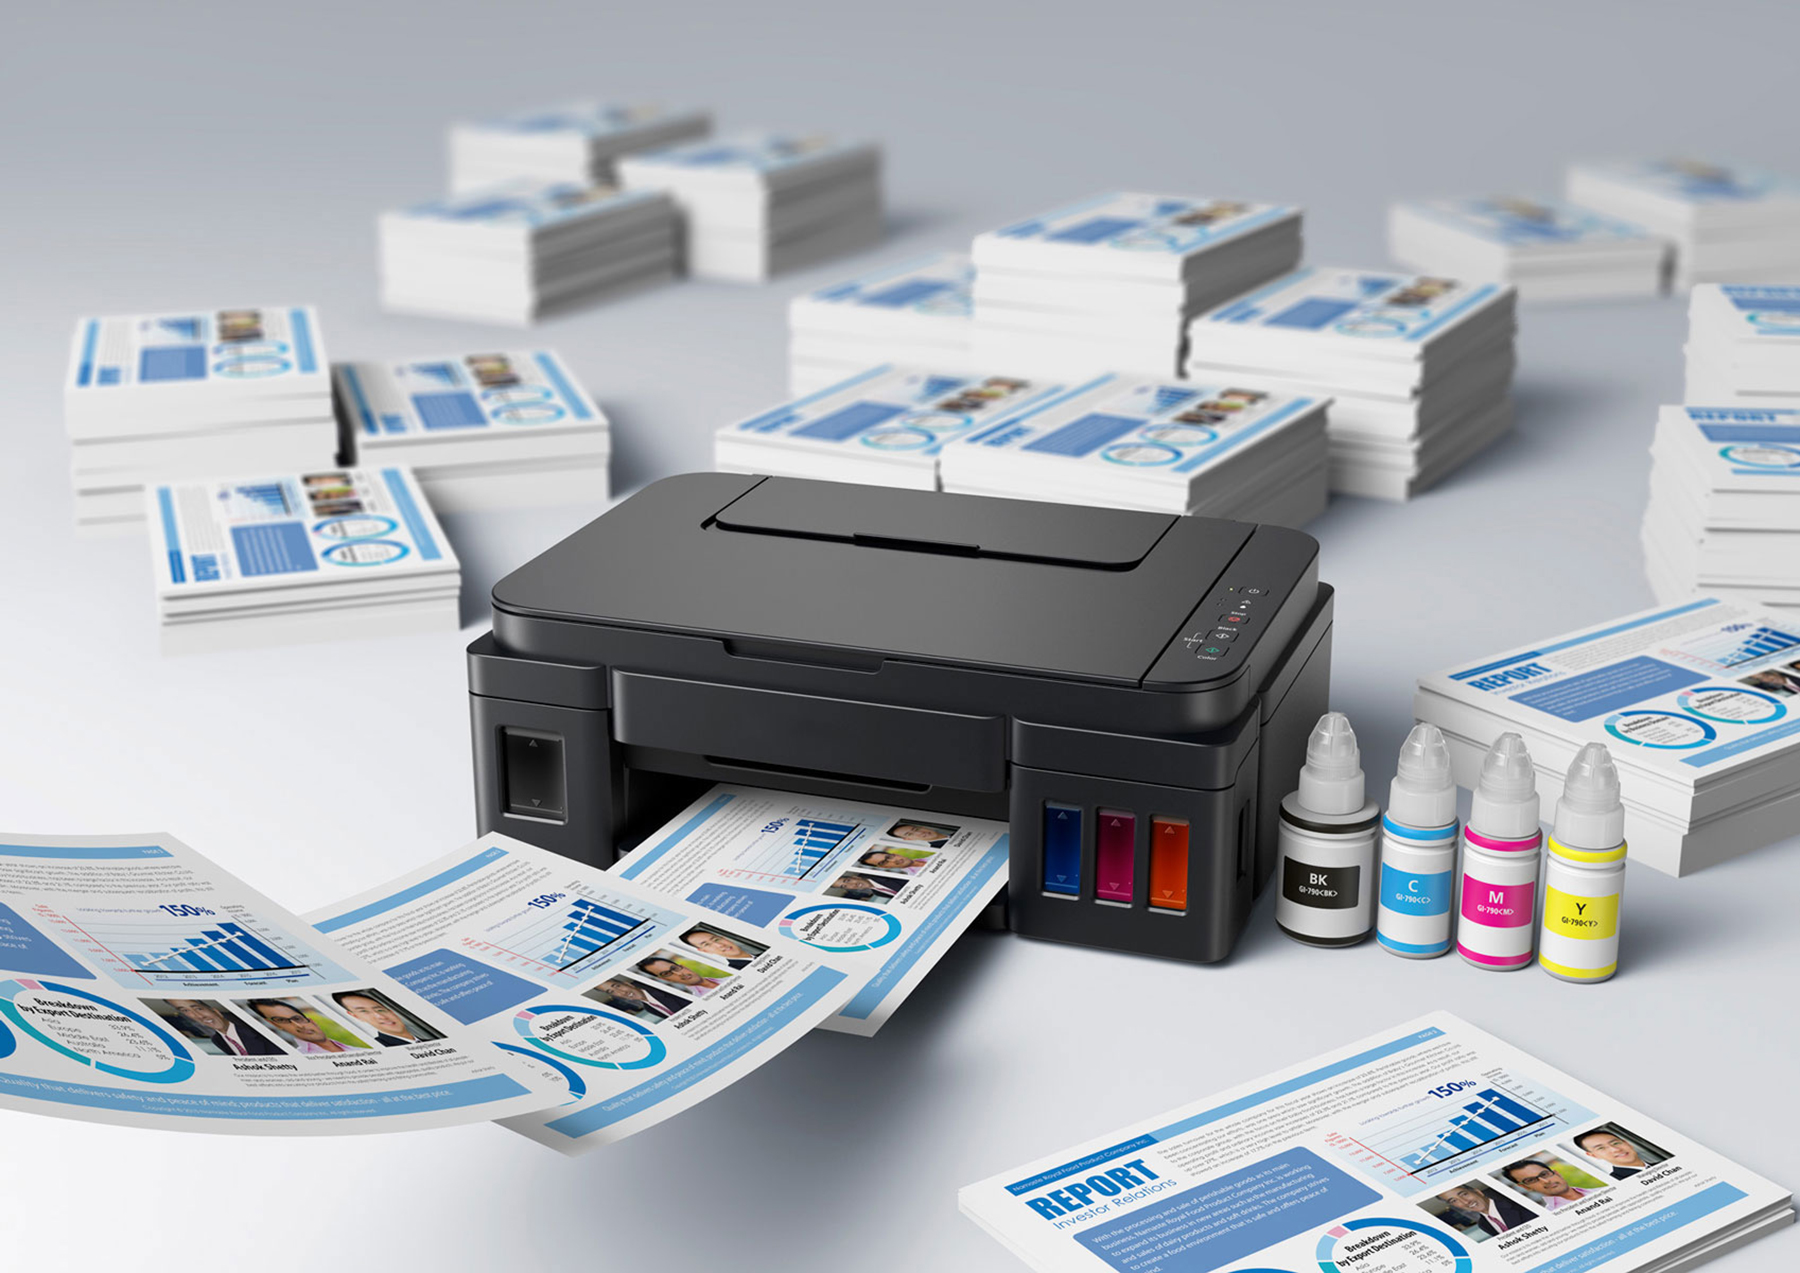 Принтер для распечатки документов. Canon PIXMA g3200. Sharp MX-238gt. Копирование и печать. Цветная печать.